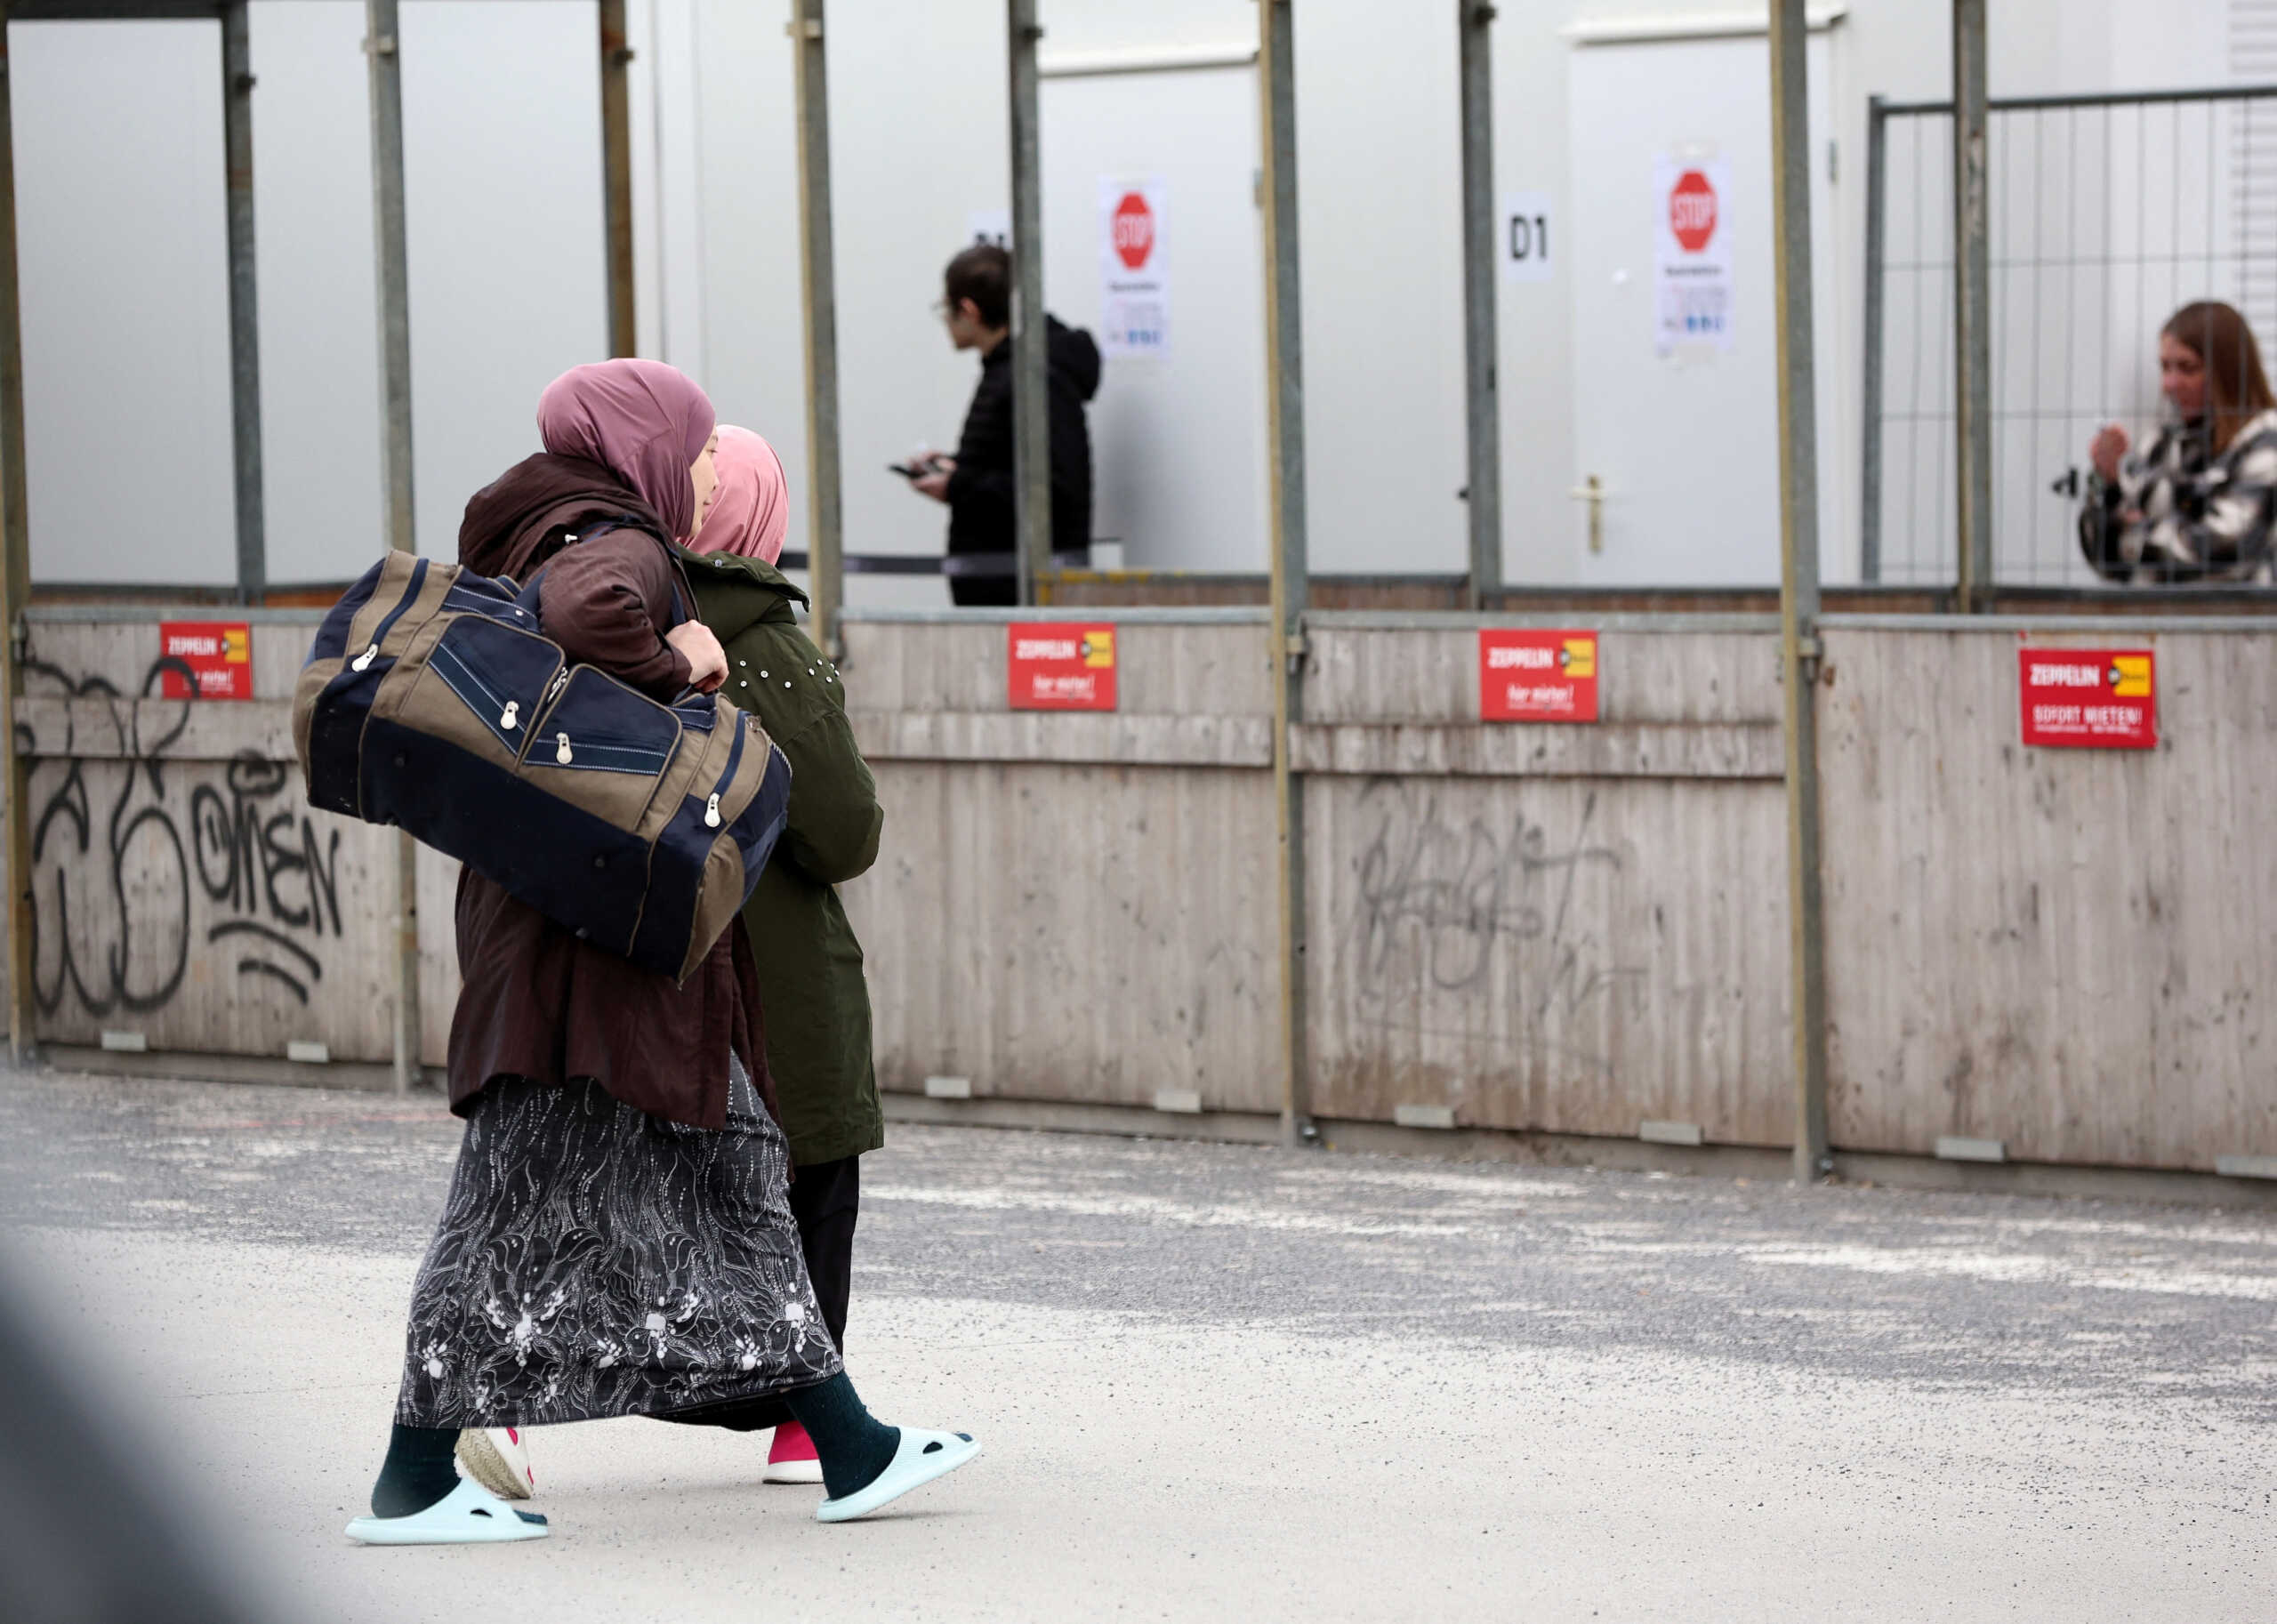 Η Ιταλία ζητά σχεδόν 5.000 ευρώ από τους μετανάστες που προσφεύγουν κατά της απόρριψης της αίτησης ασύλου